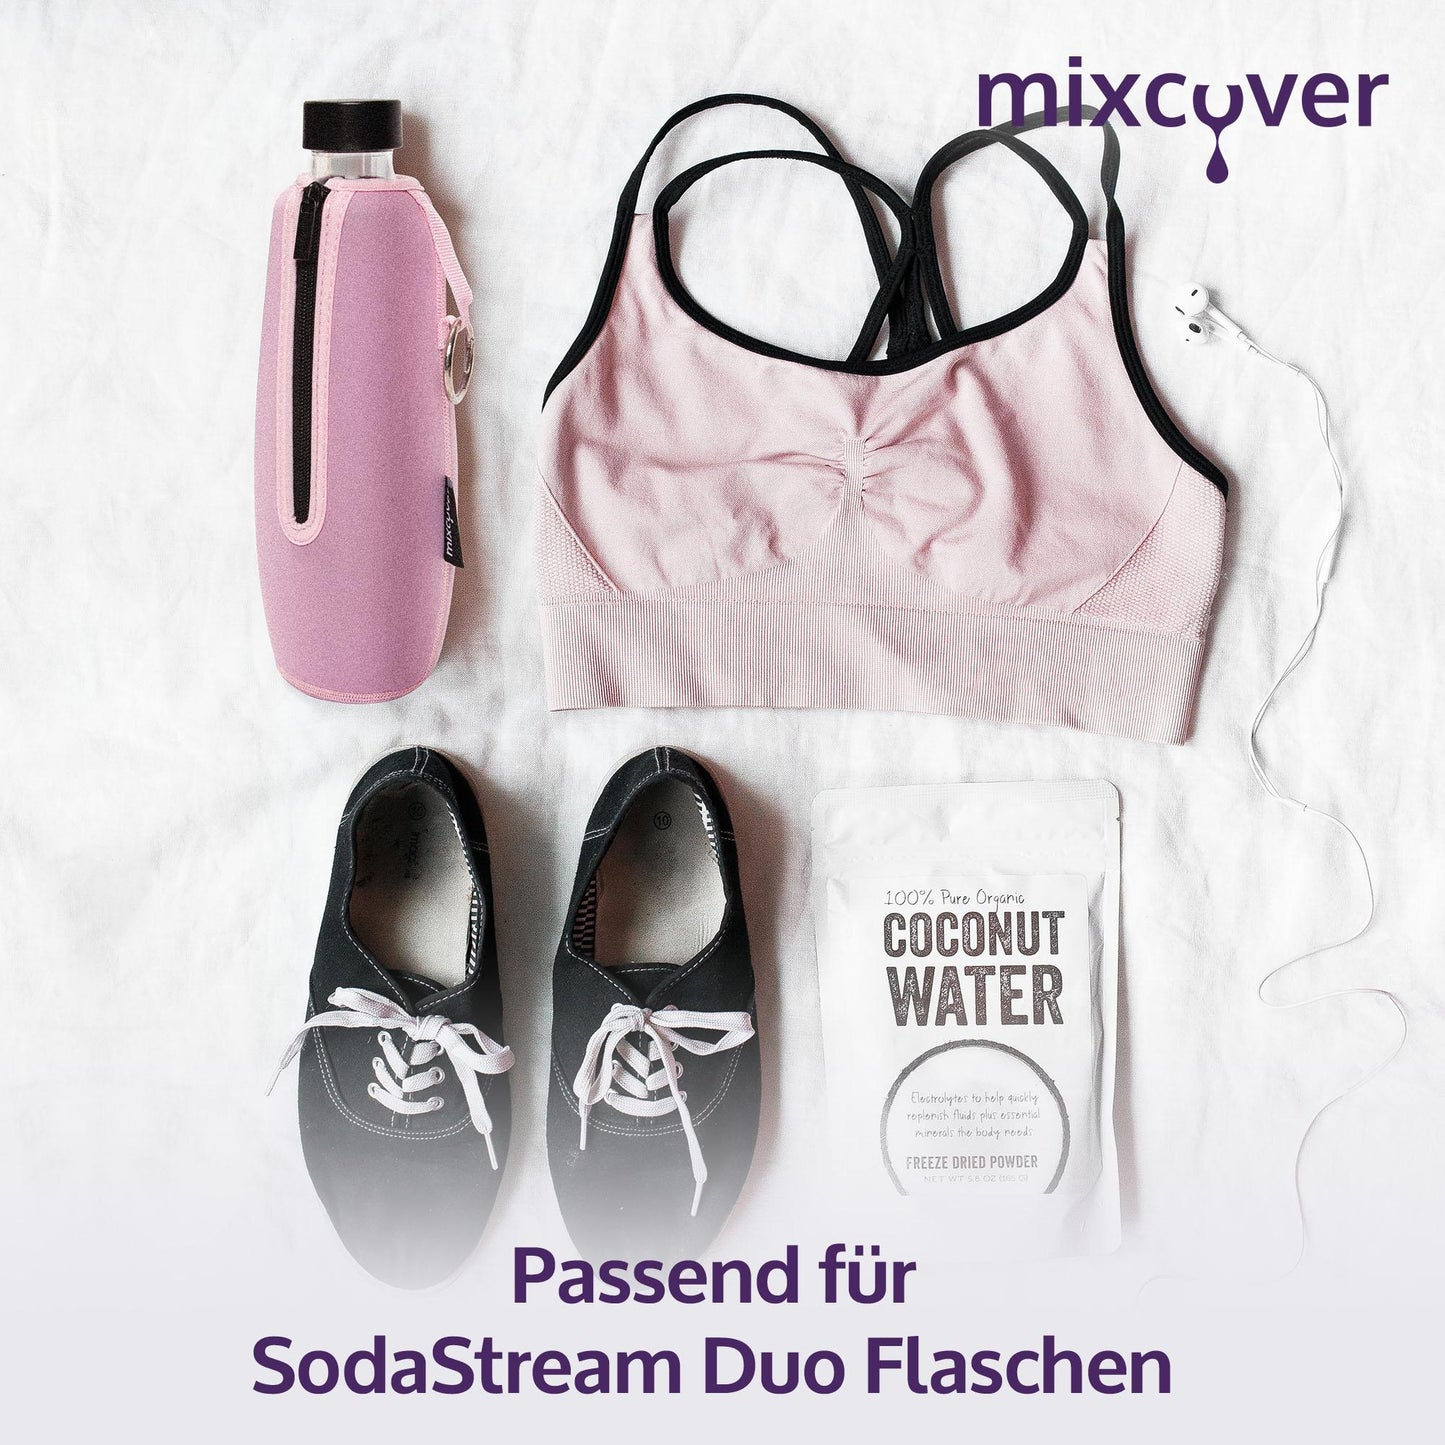 mixcover isolierter Flaschenschutz kompatibel mit SodaStream Duo Glasflaschen Schutzhülle für Flaschen, Schutz vor Bruch und Kratzern, Farbe Pink - Mixcover - Mixcover